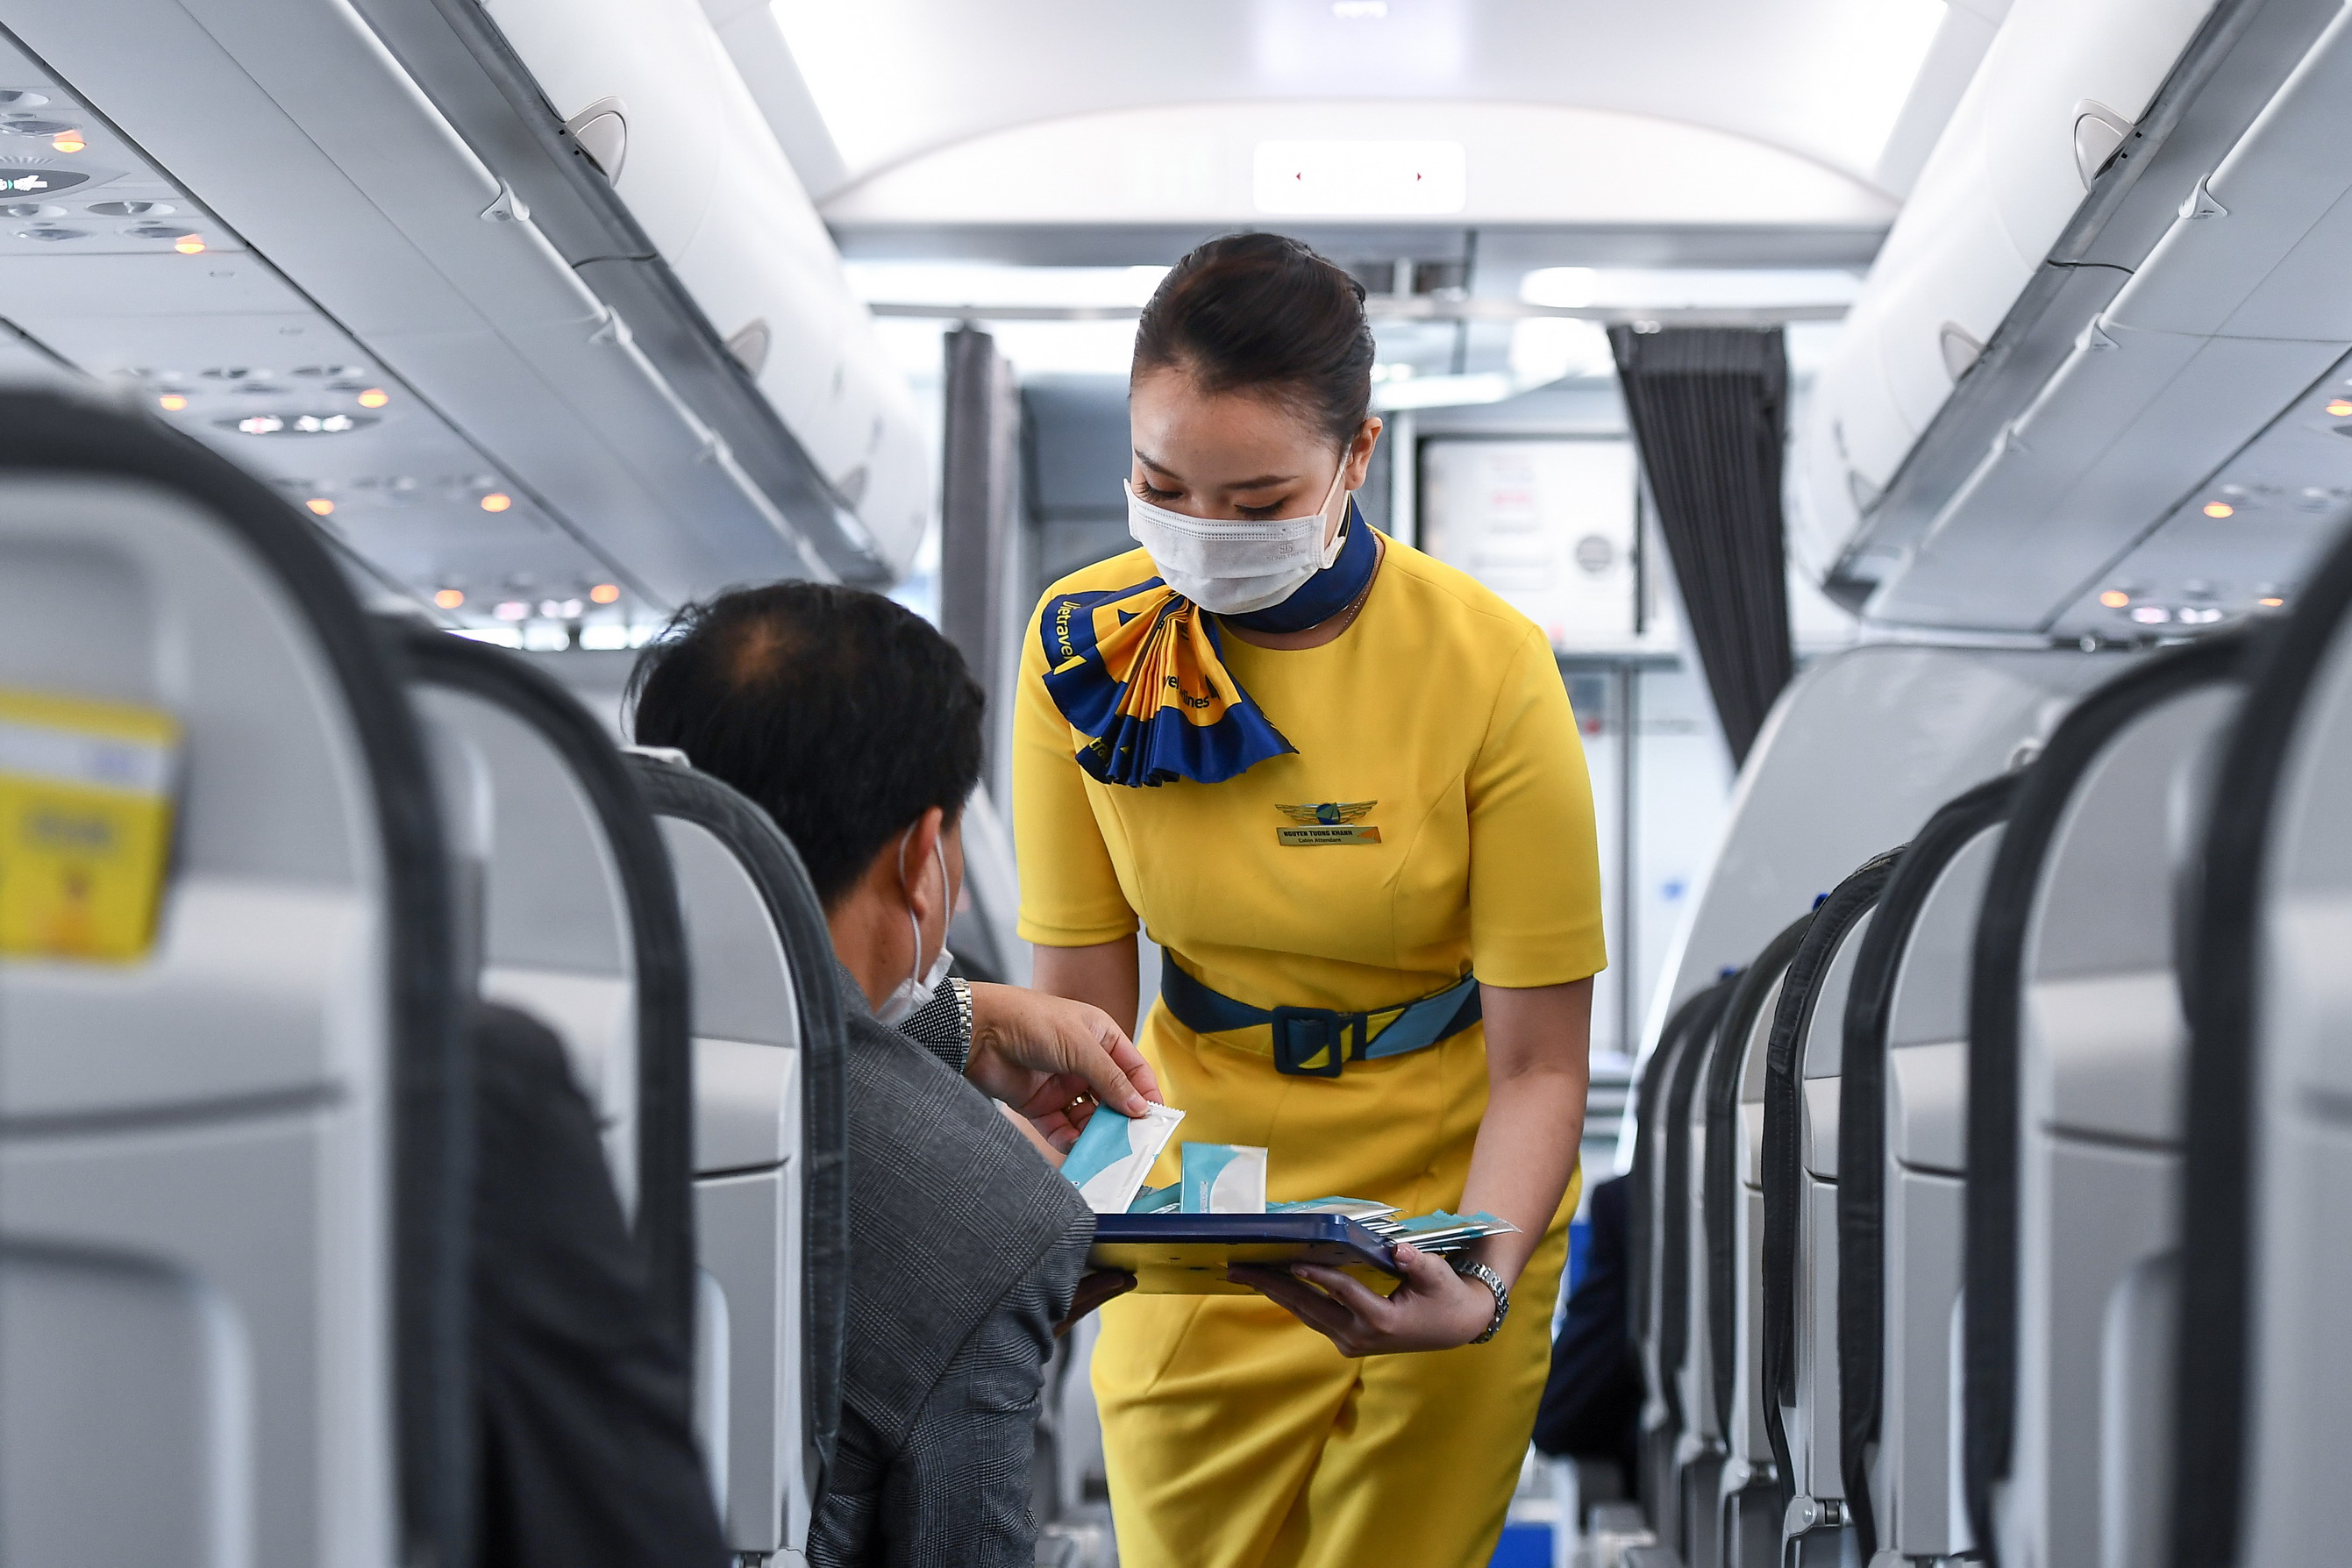 Bay cùng Vietravel Airlines   trải nghiệm bộ sản phẩm ưu đãi đầu tiên chỉ từ 2.39 triệu 